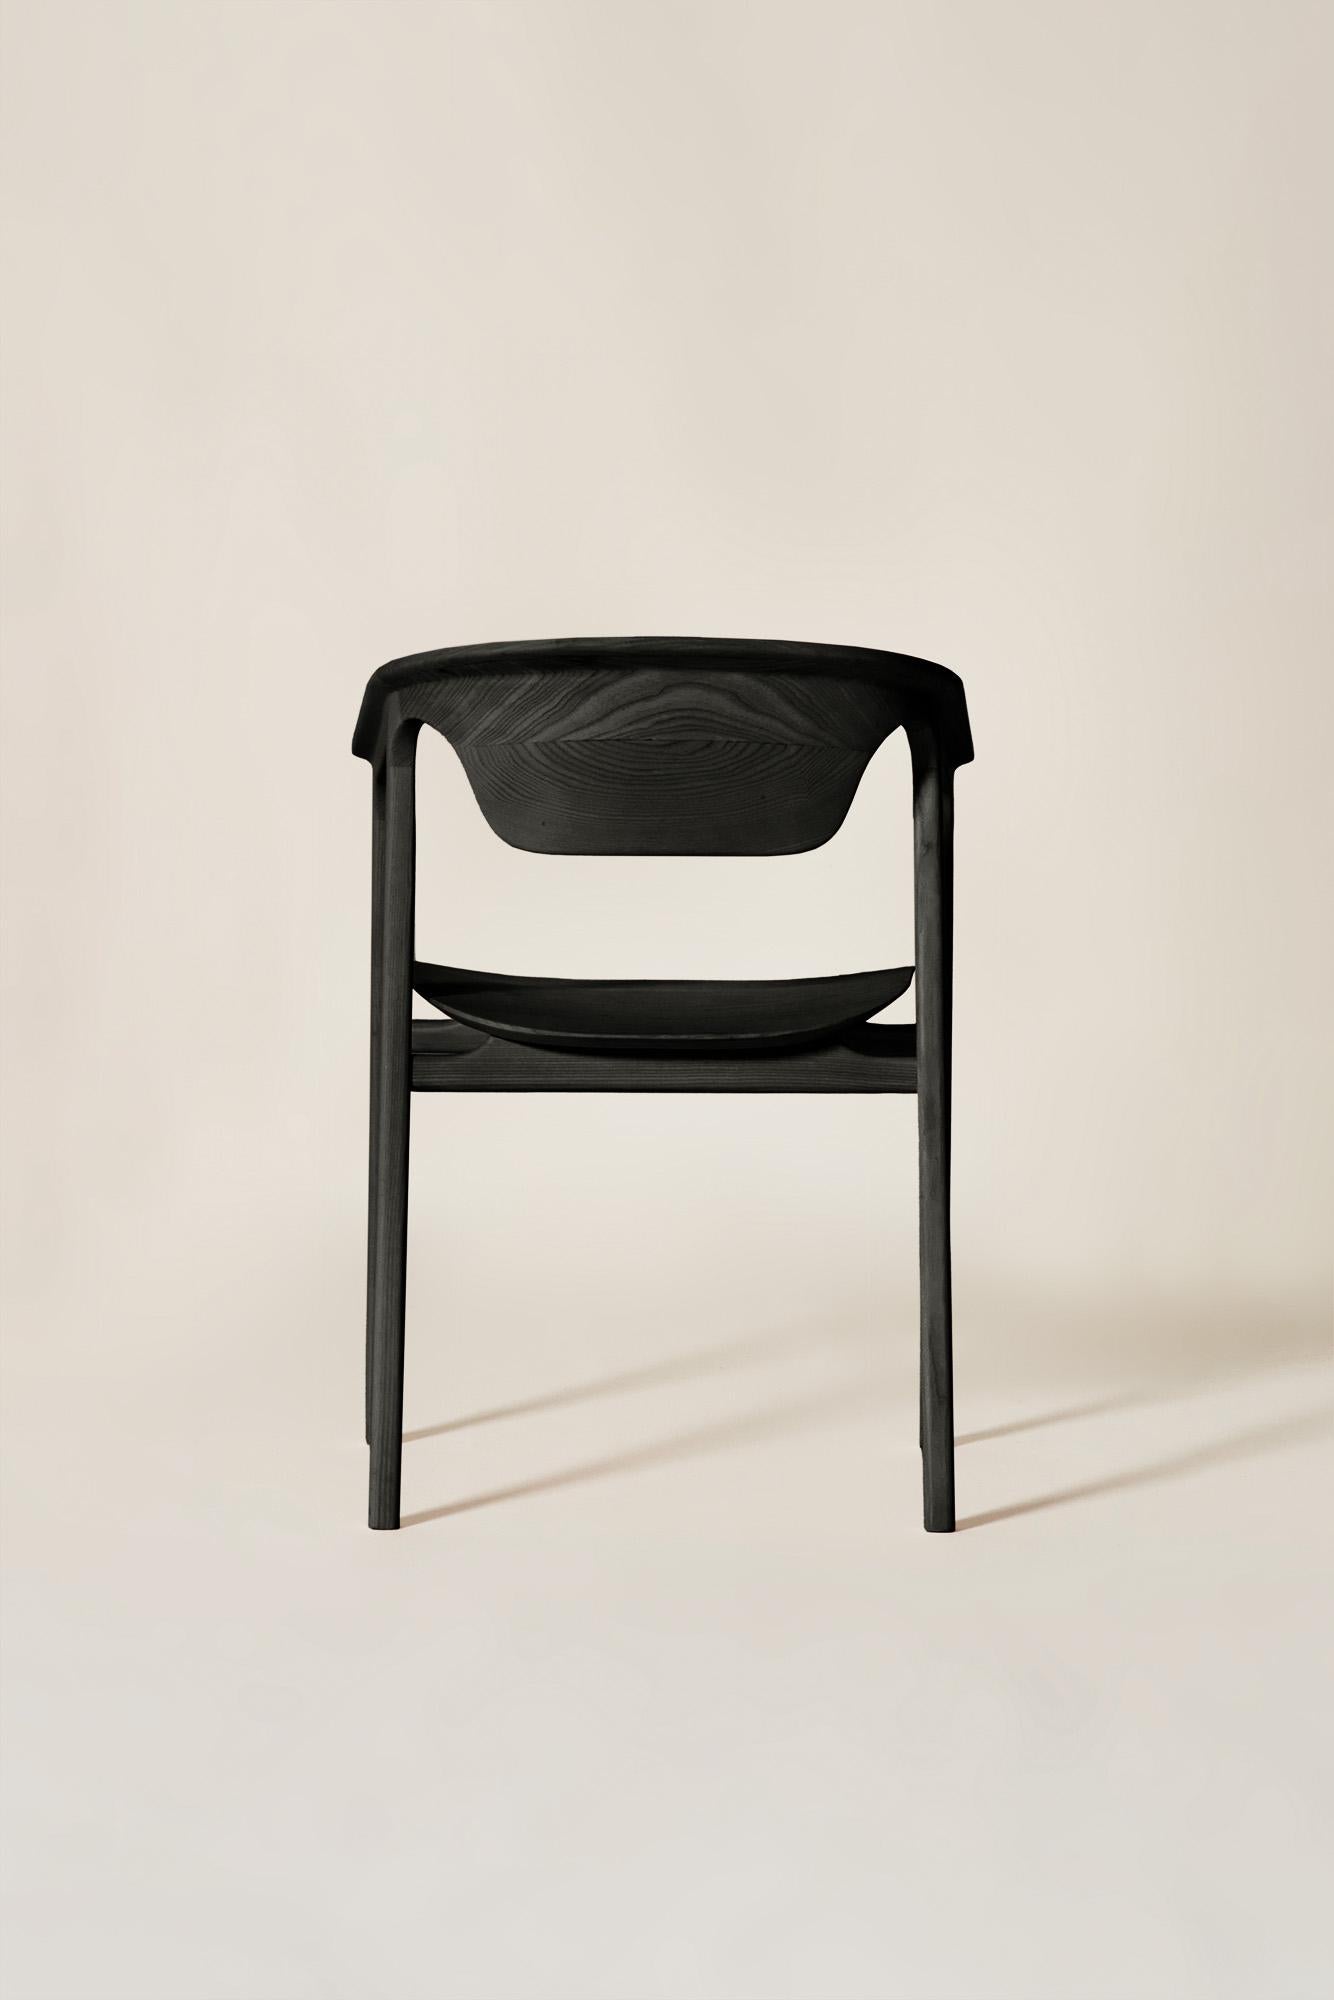 Issu de la collection 2023 de meubles contemporains, Duna est l'équilibre parfait entre les formes douces et linéaires. Sa conception est le résultat d'une étude formelle minutieuse visant à créer un jeu éthéré de solides et de vides. De la jointure